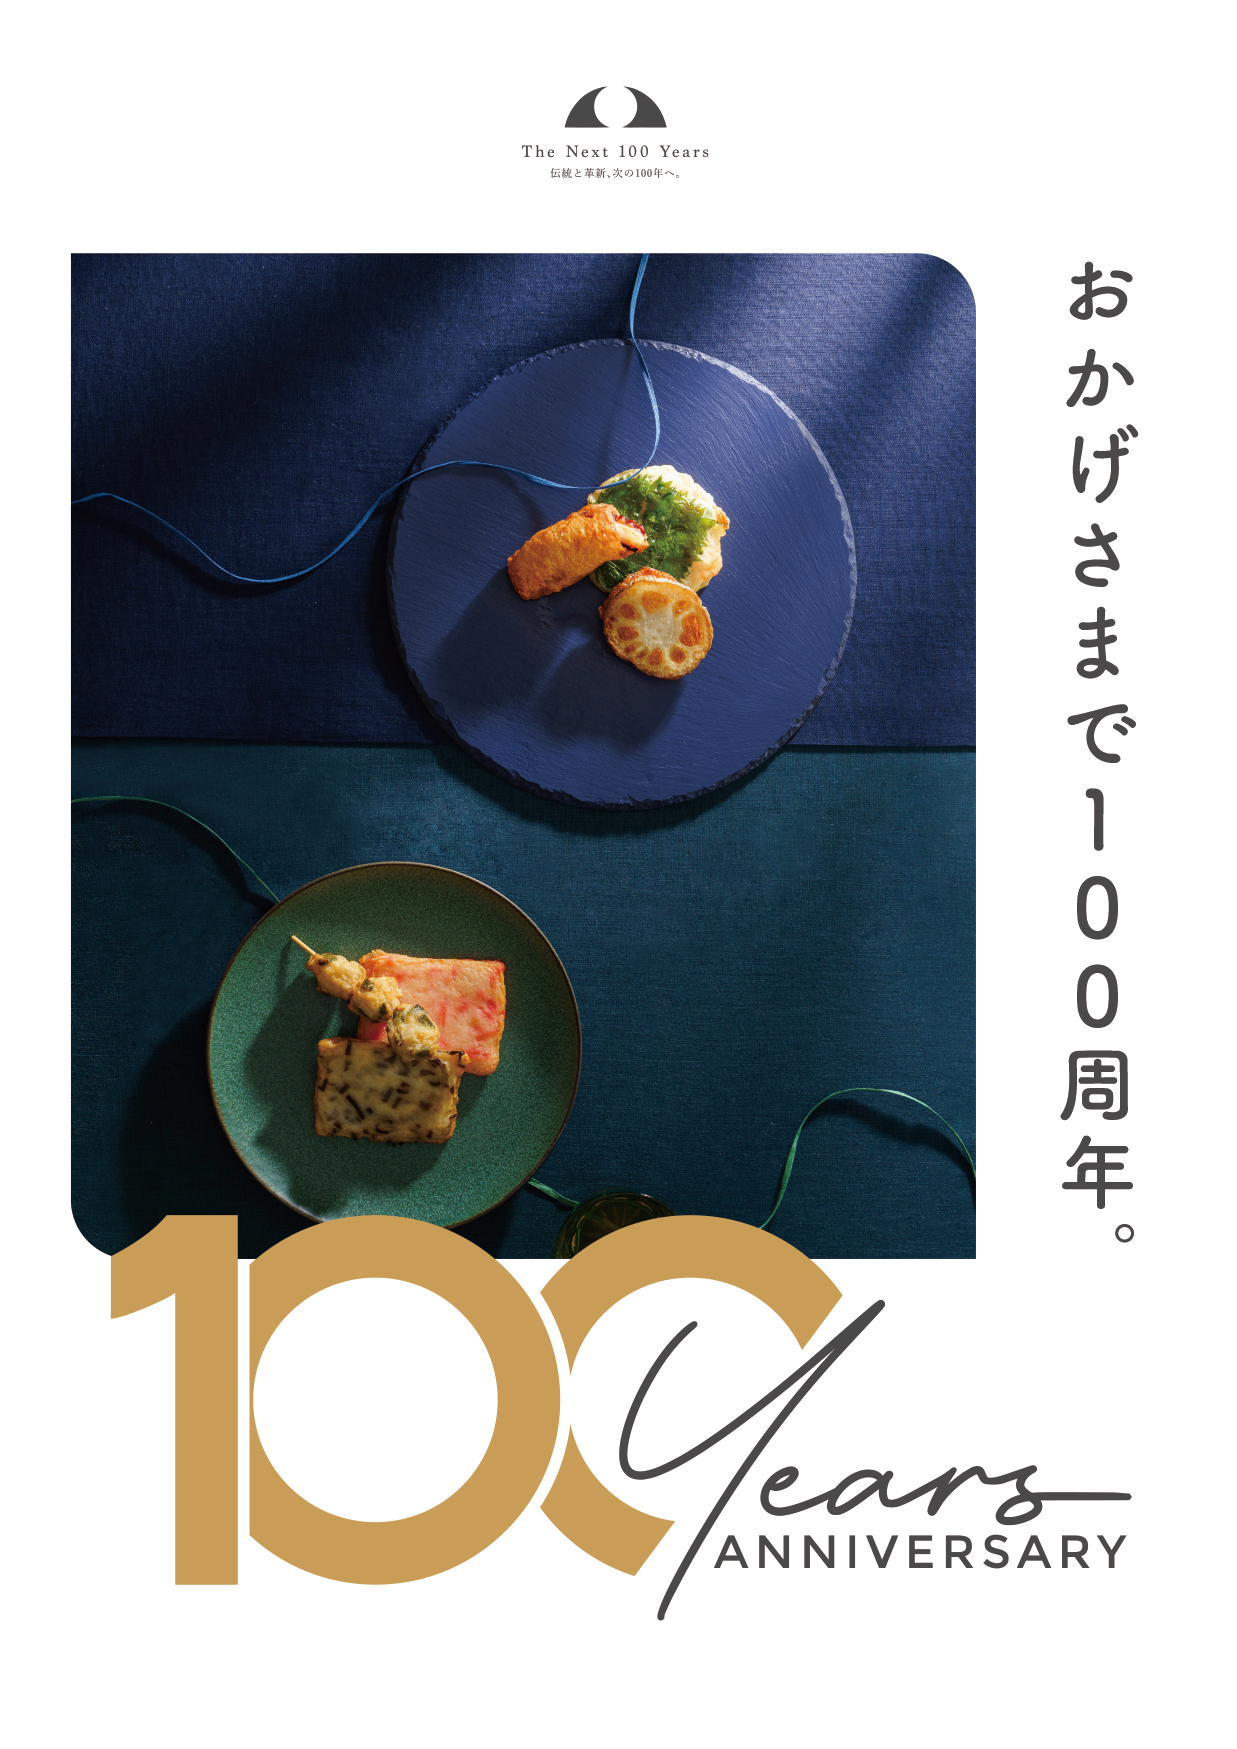 神戸「丸八蒲鉾」の100周年イベント第一弾が8月10日～8月12日
3日間限定開催！『皆様に愛されて100年お客様感謝祭』